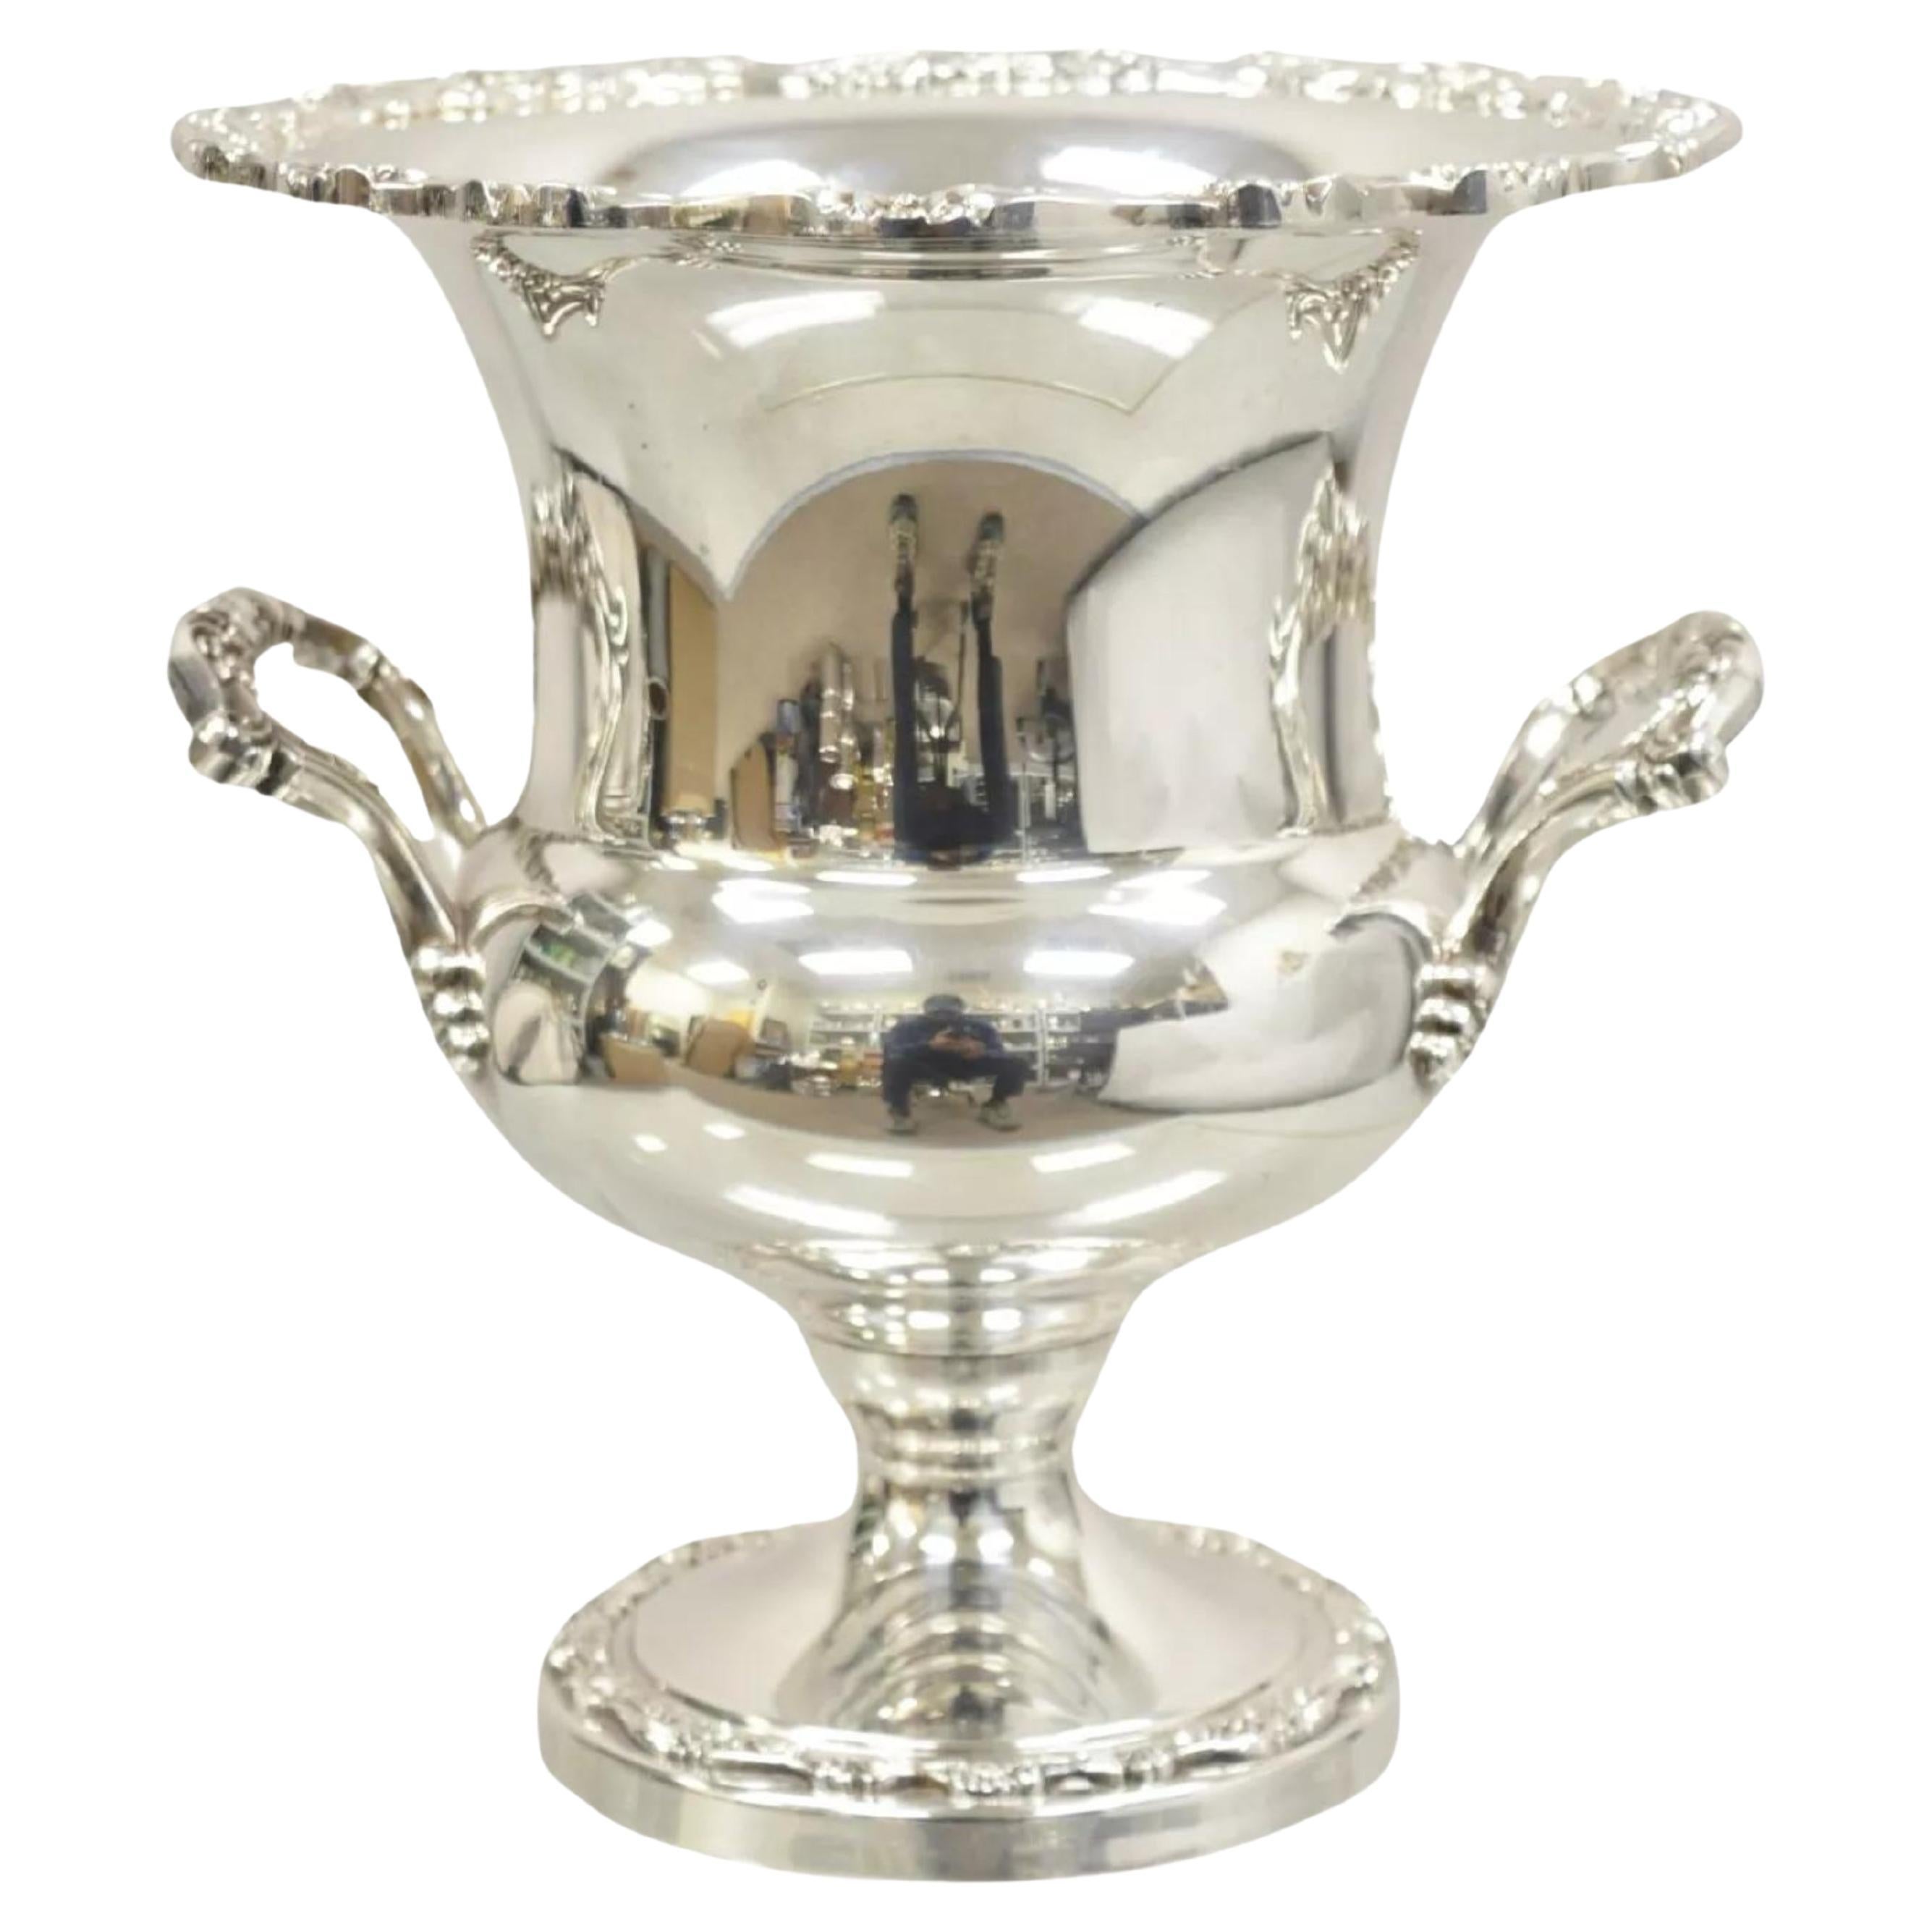 Vintage viktorianischen Stil groß geriffelte Trophäe Cup Champagner Chiller Eiskübel